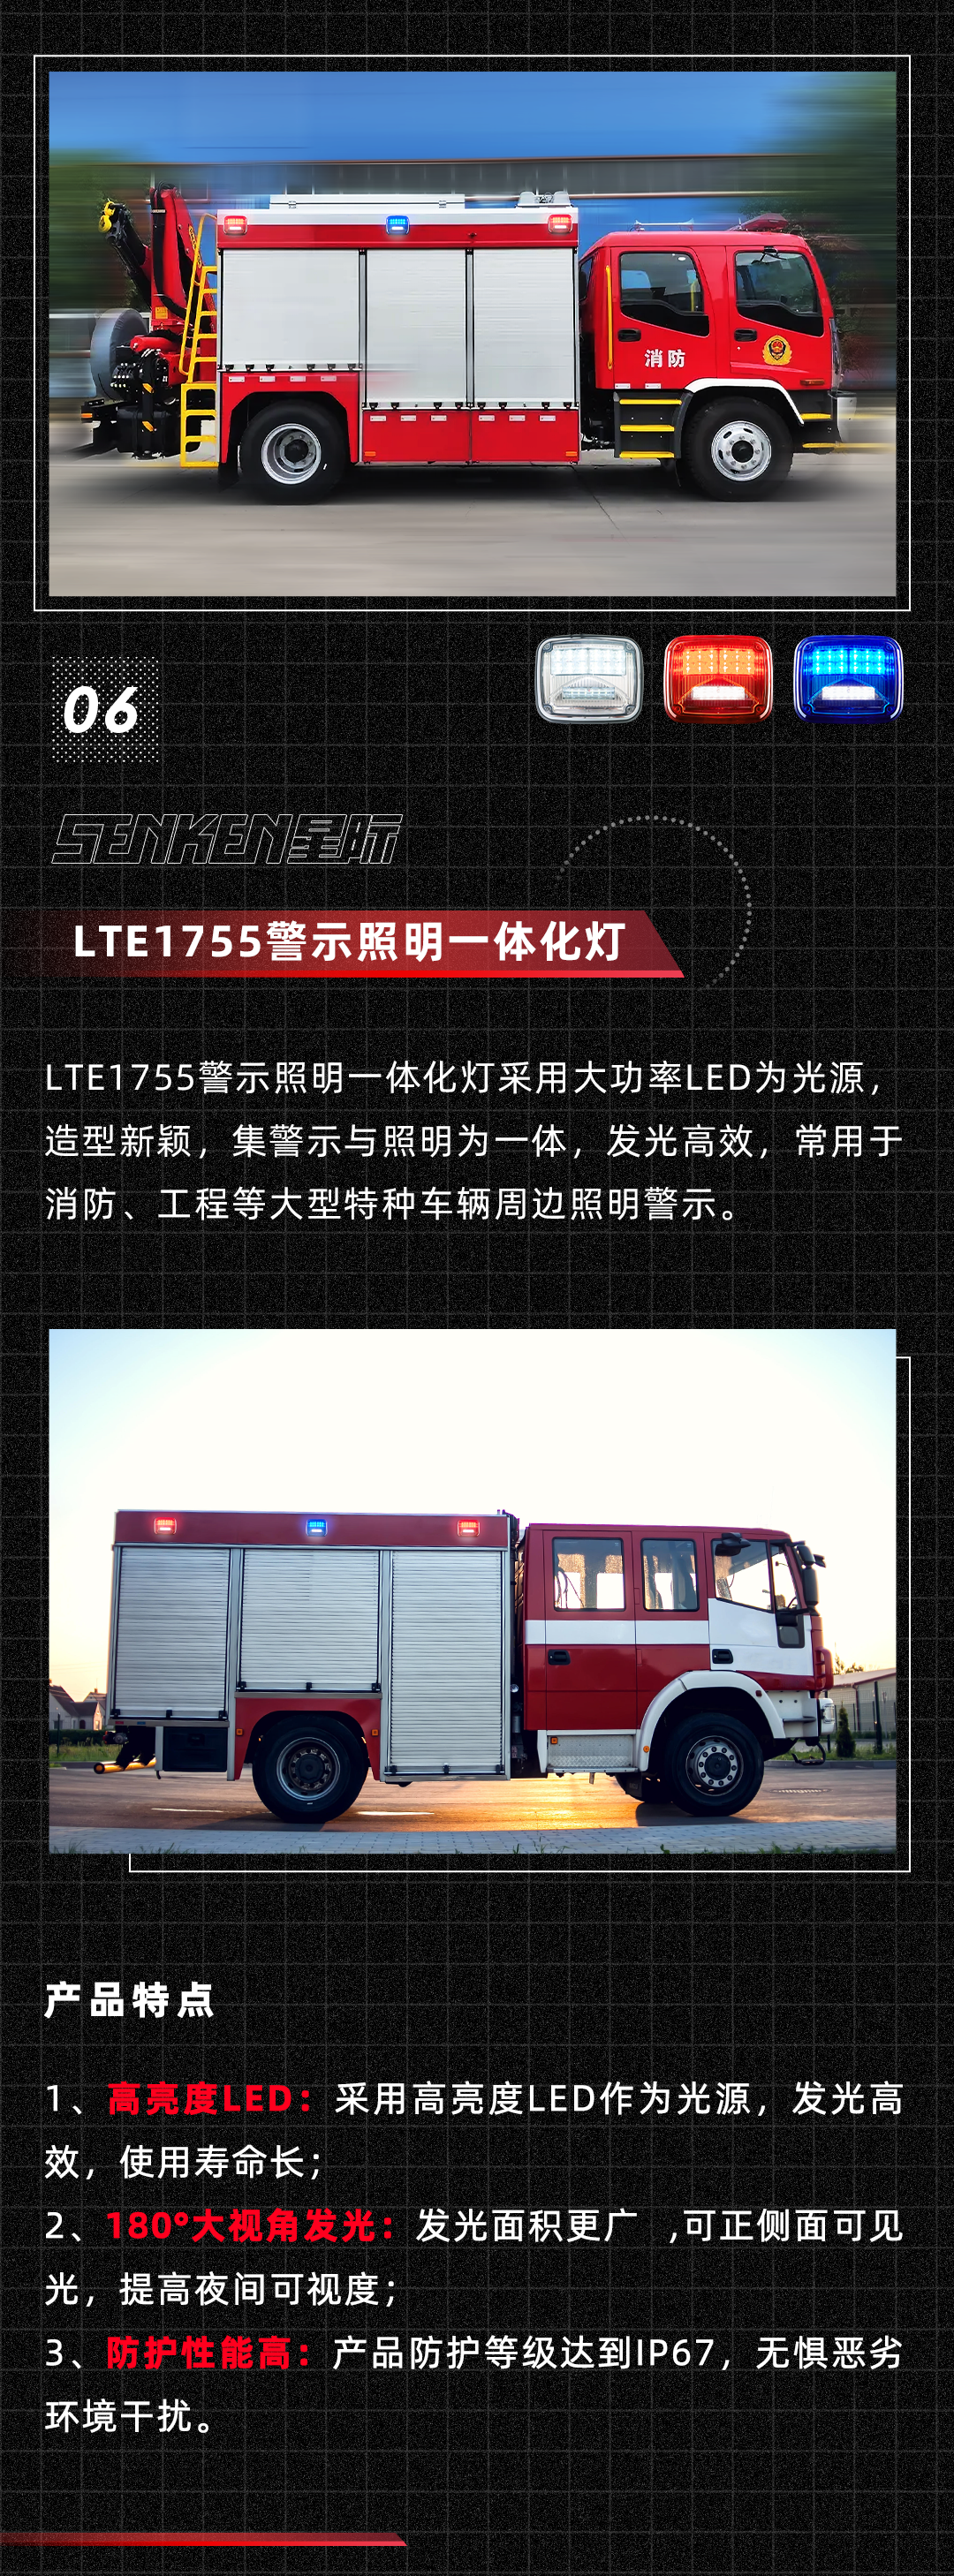 消防车侧面_09.png